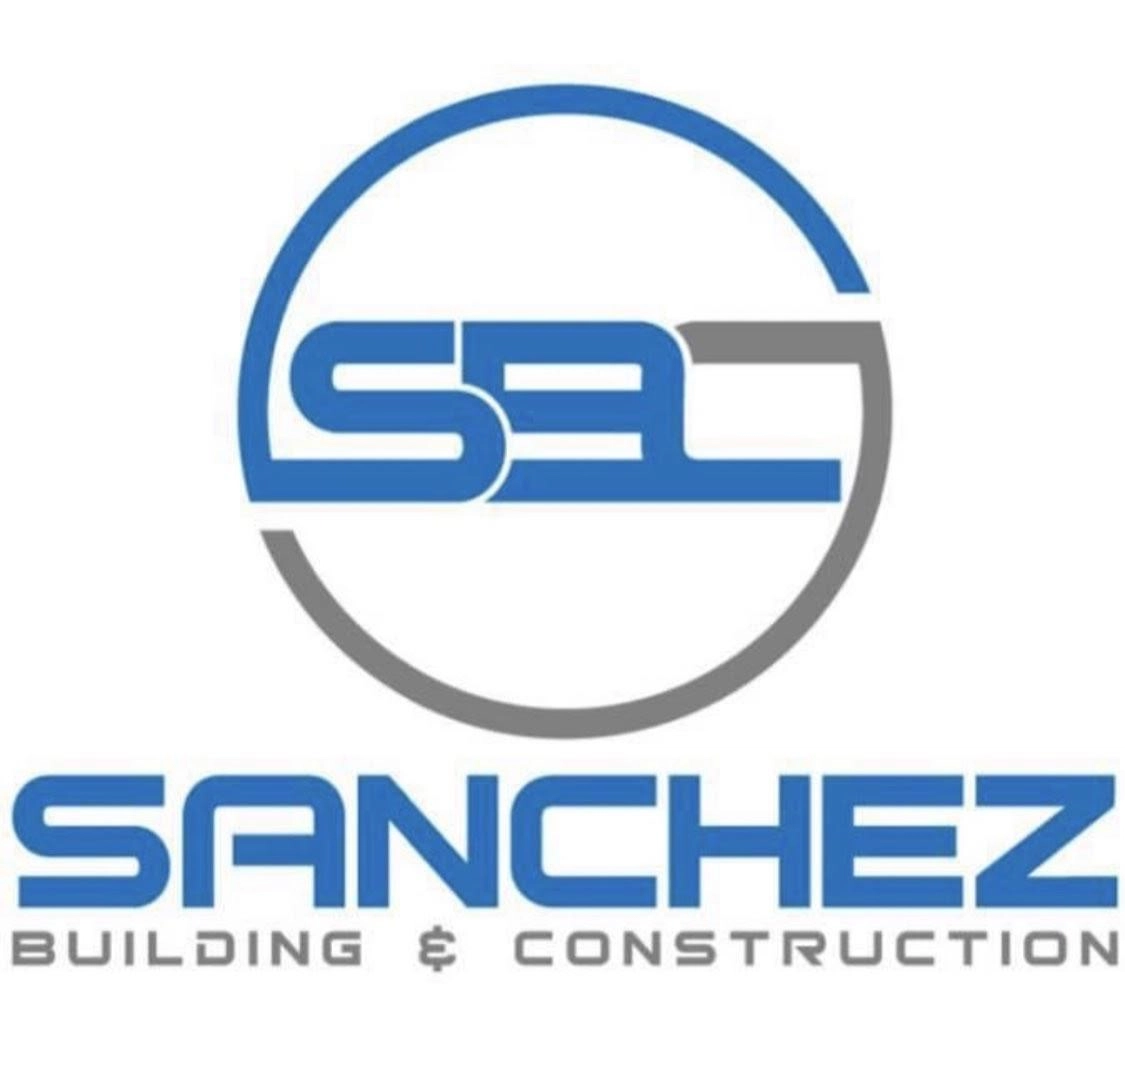 Sanchez Building & Construction Logo